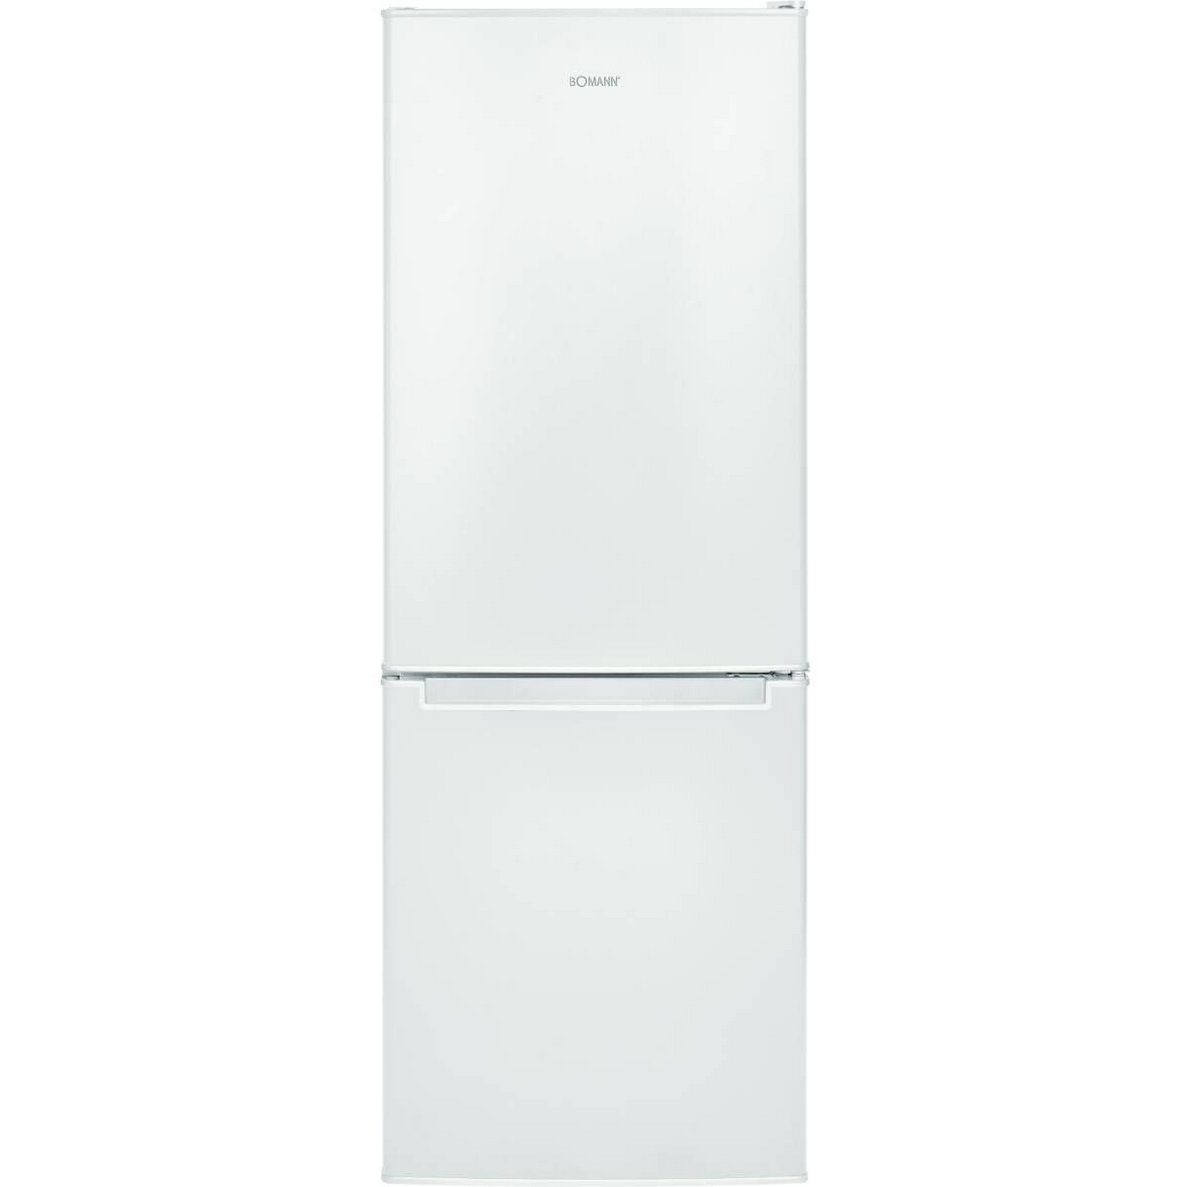 BOMANN Kühlschrank KG 7331, 50 cm breit, Gesamt-Nutzinhalt von 173 Liter  online kaufen | OTTO